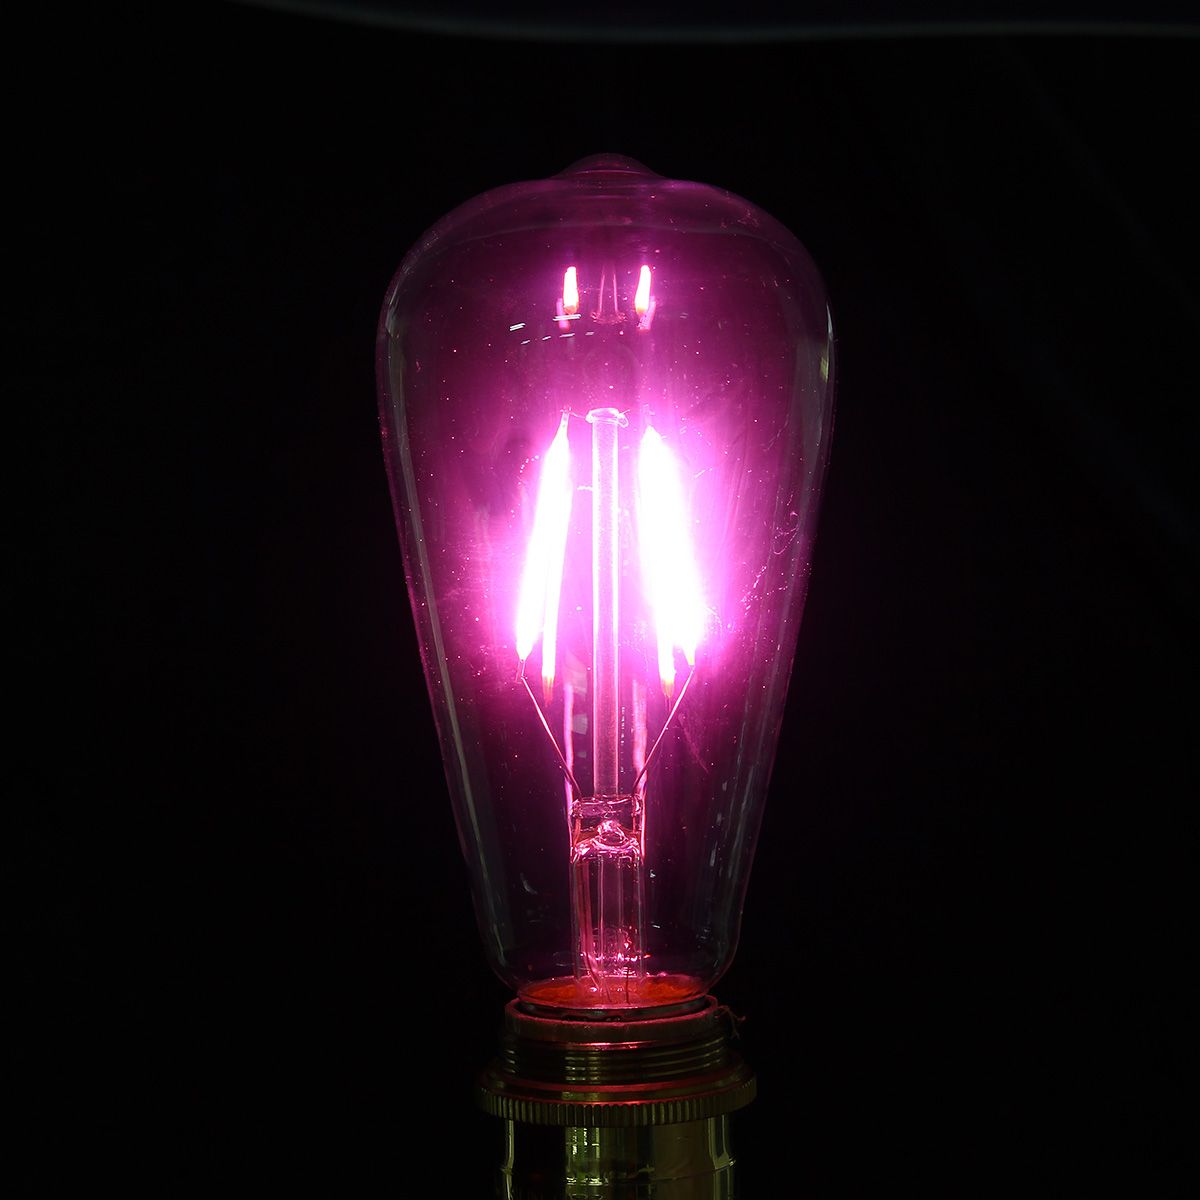 E27-ST64-2W-Vintage-Edison-Light-Bulb-LED-COB-Filament-Colorful-Lamp-220V-1111914